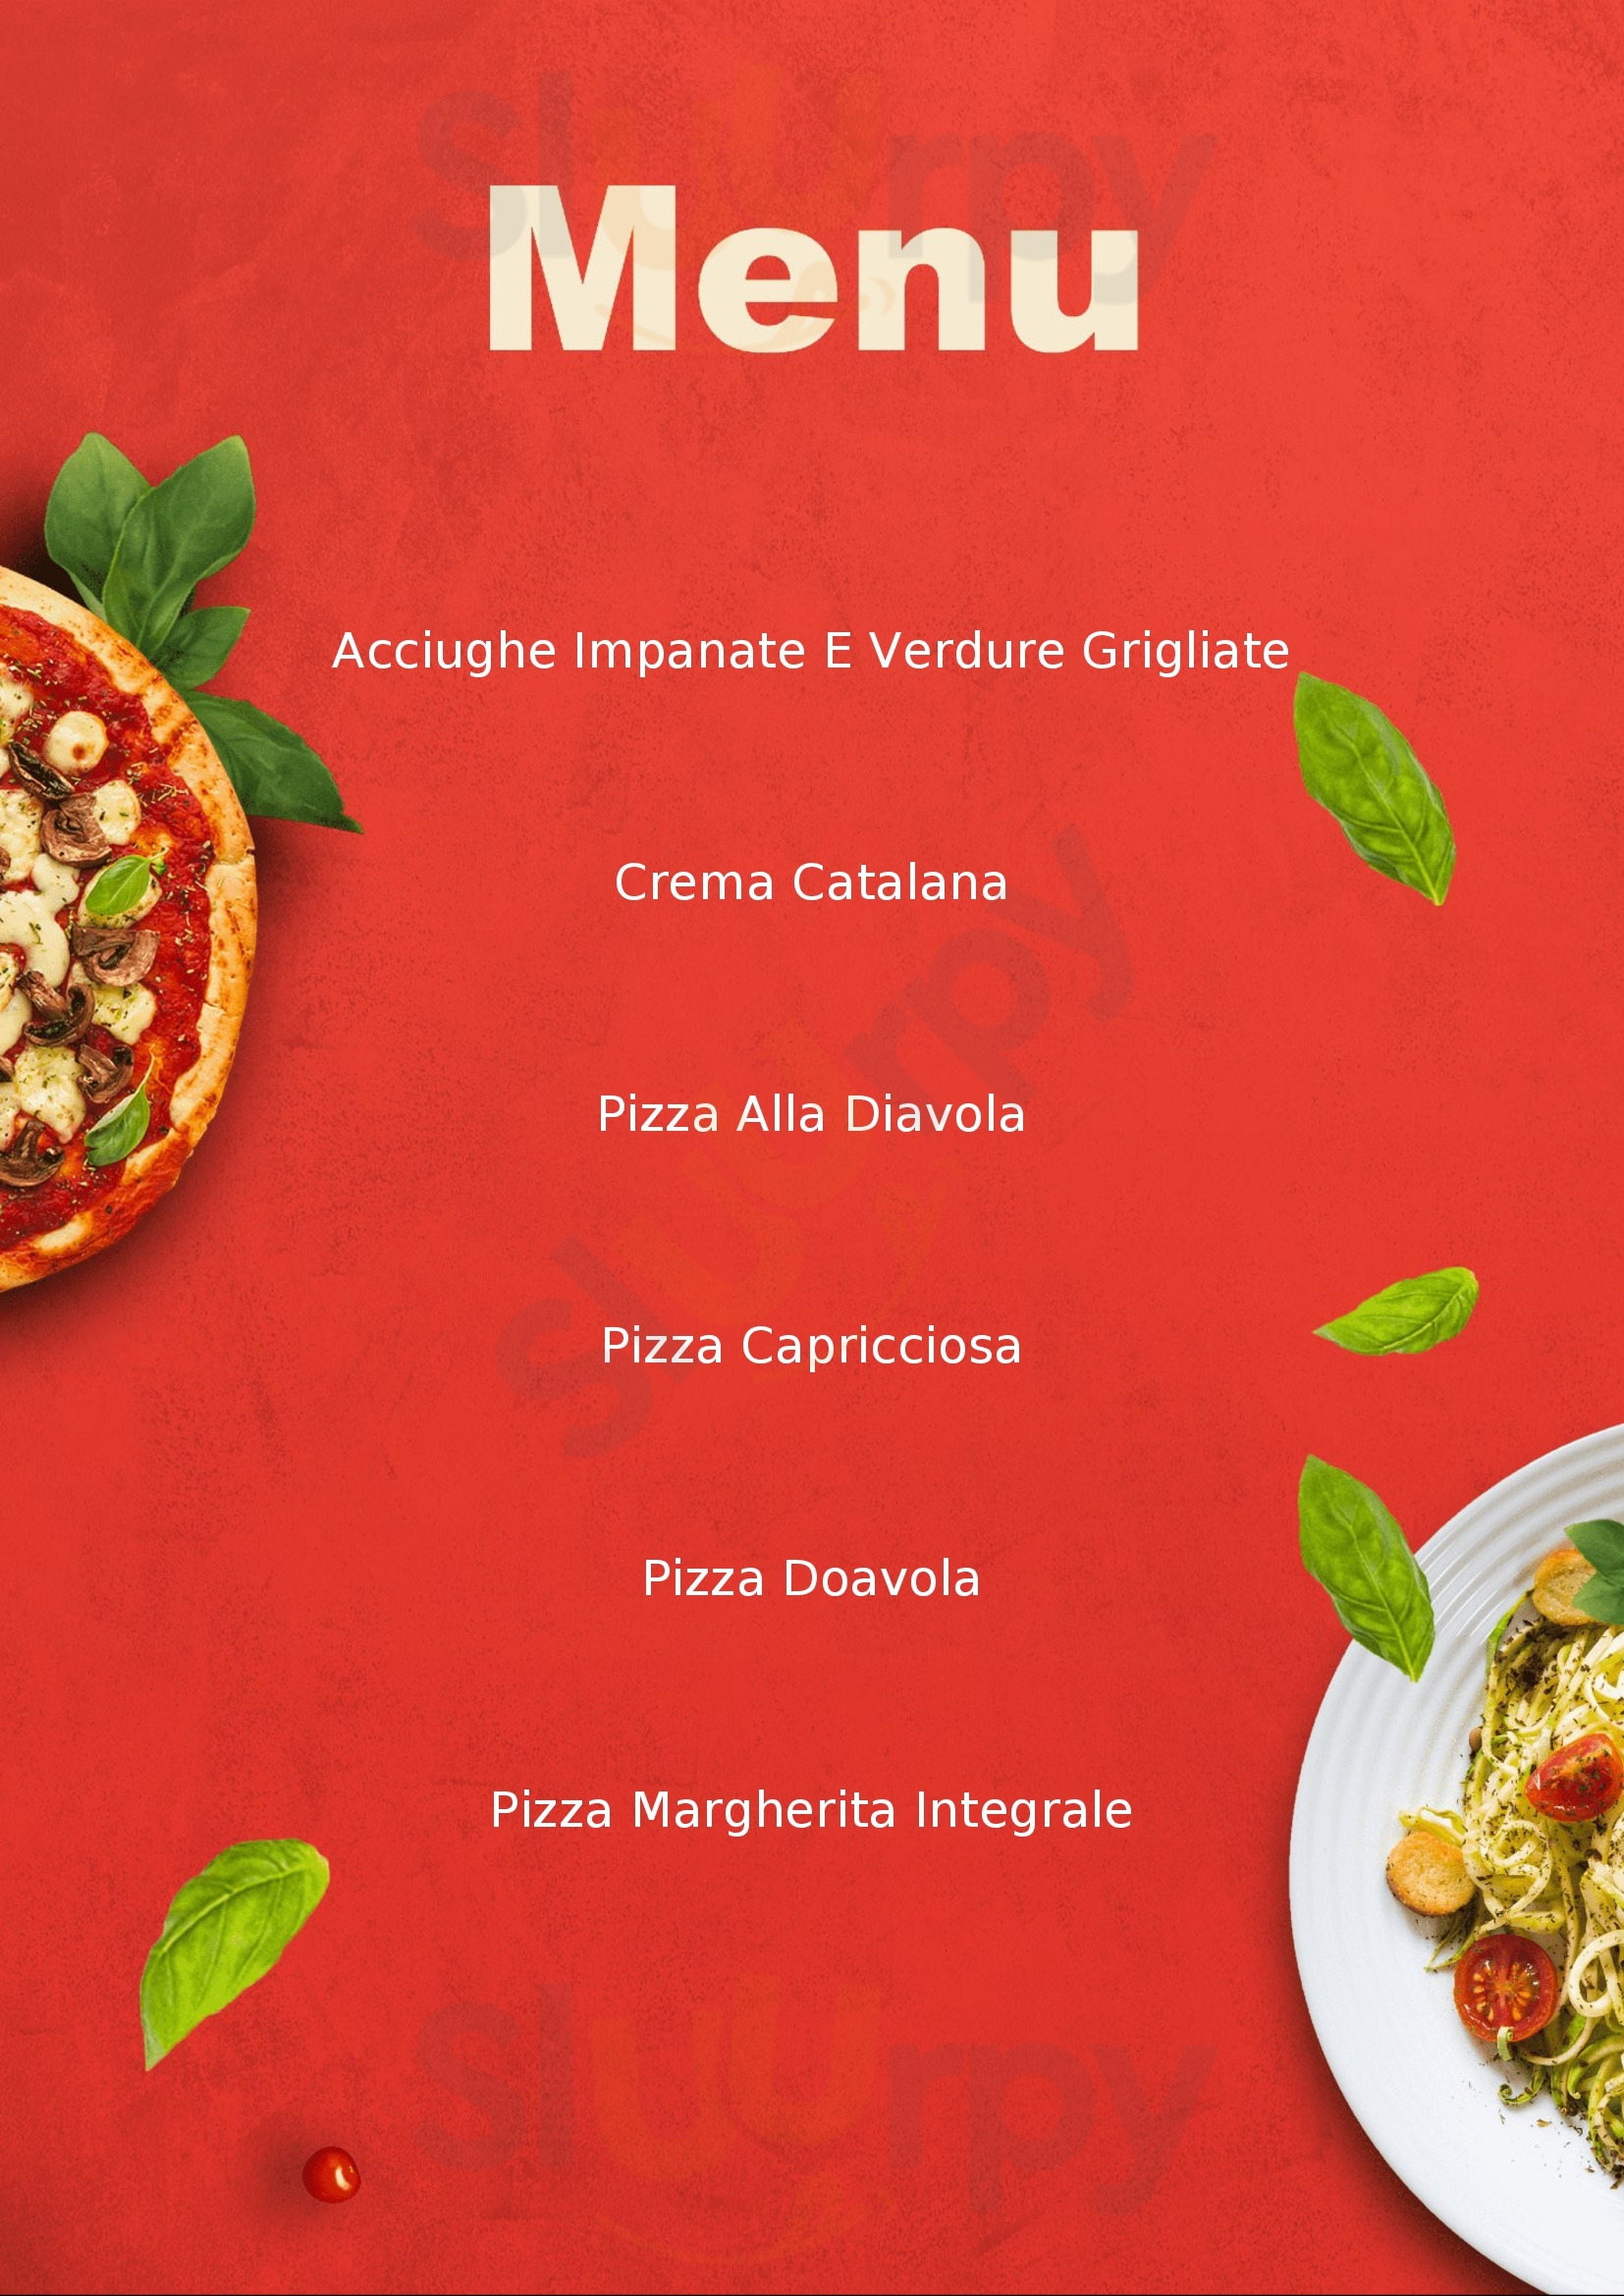 Martini pizza e cucina Acqui Terme menù 1 pagina